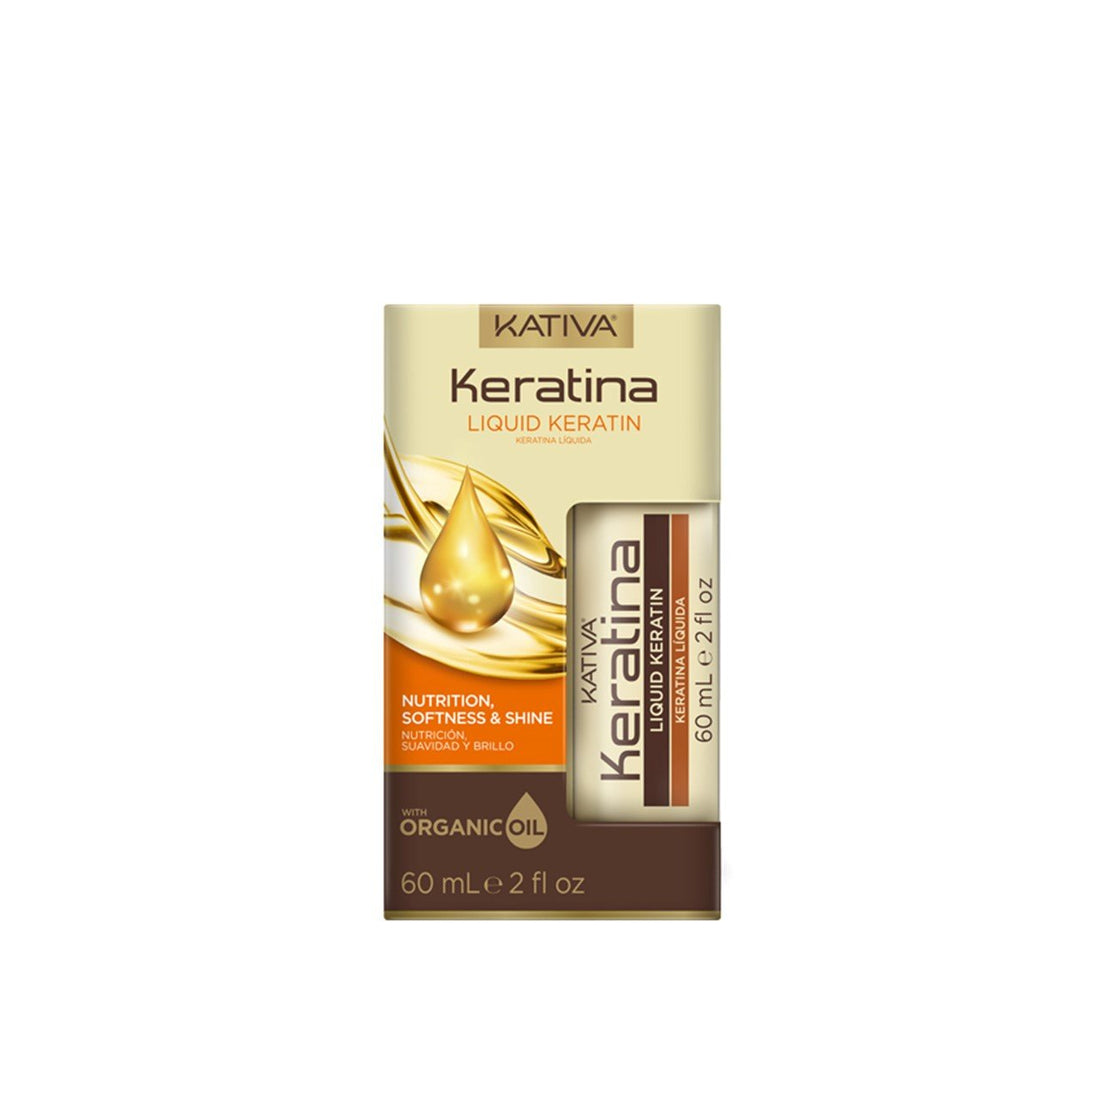 Kativa Keratin Nutrition, Softness &amp; Shine Liquid Keratin 60ml